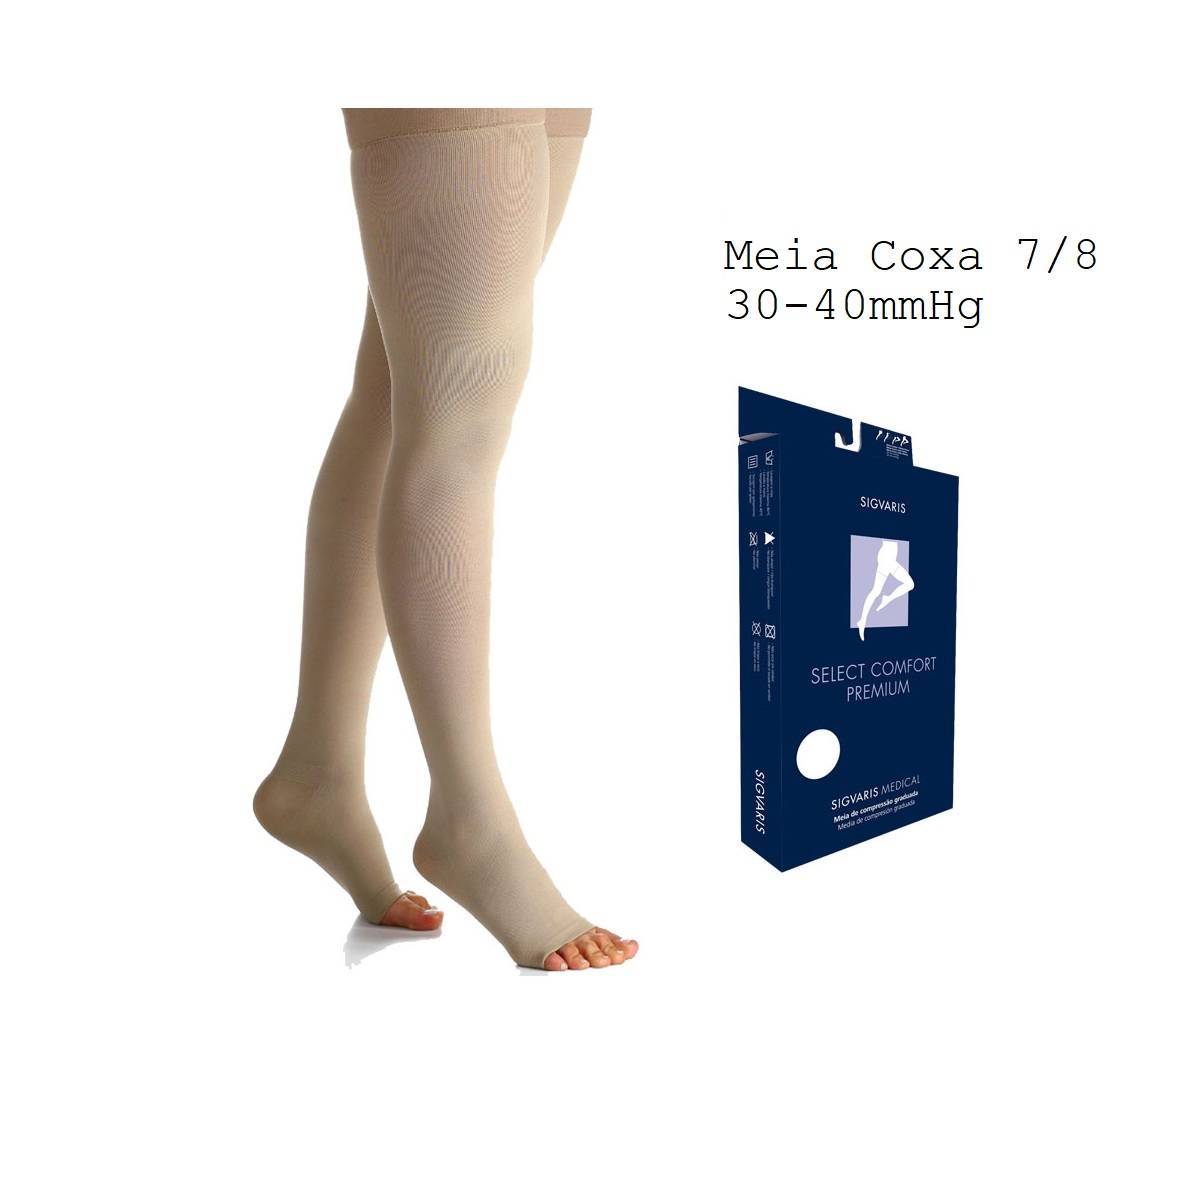 Meia Sigvaris Select Comfort Premium Meia Coxa 7/8 30-40mmhg